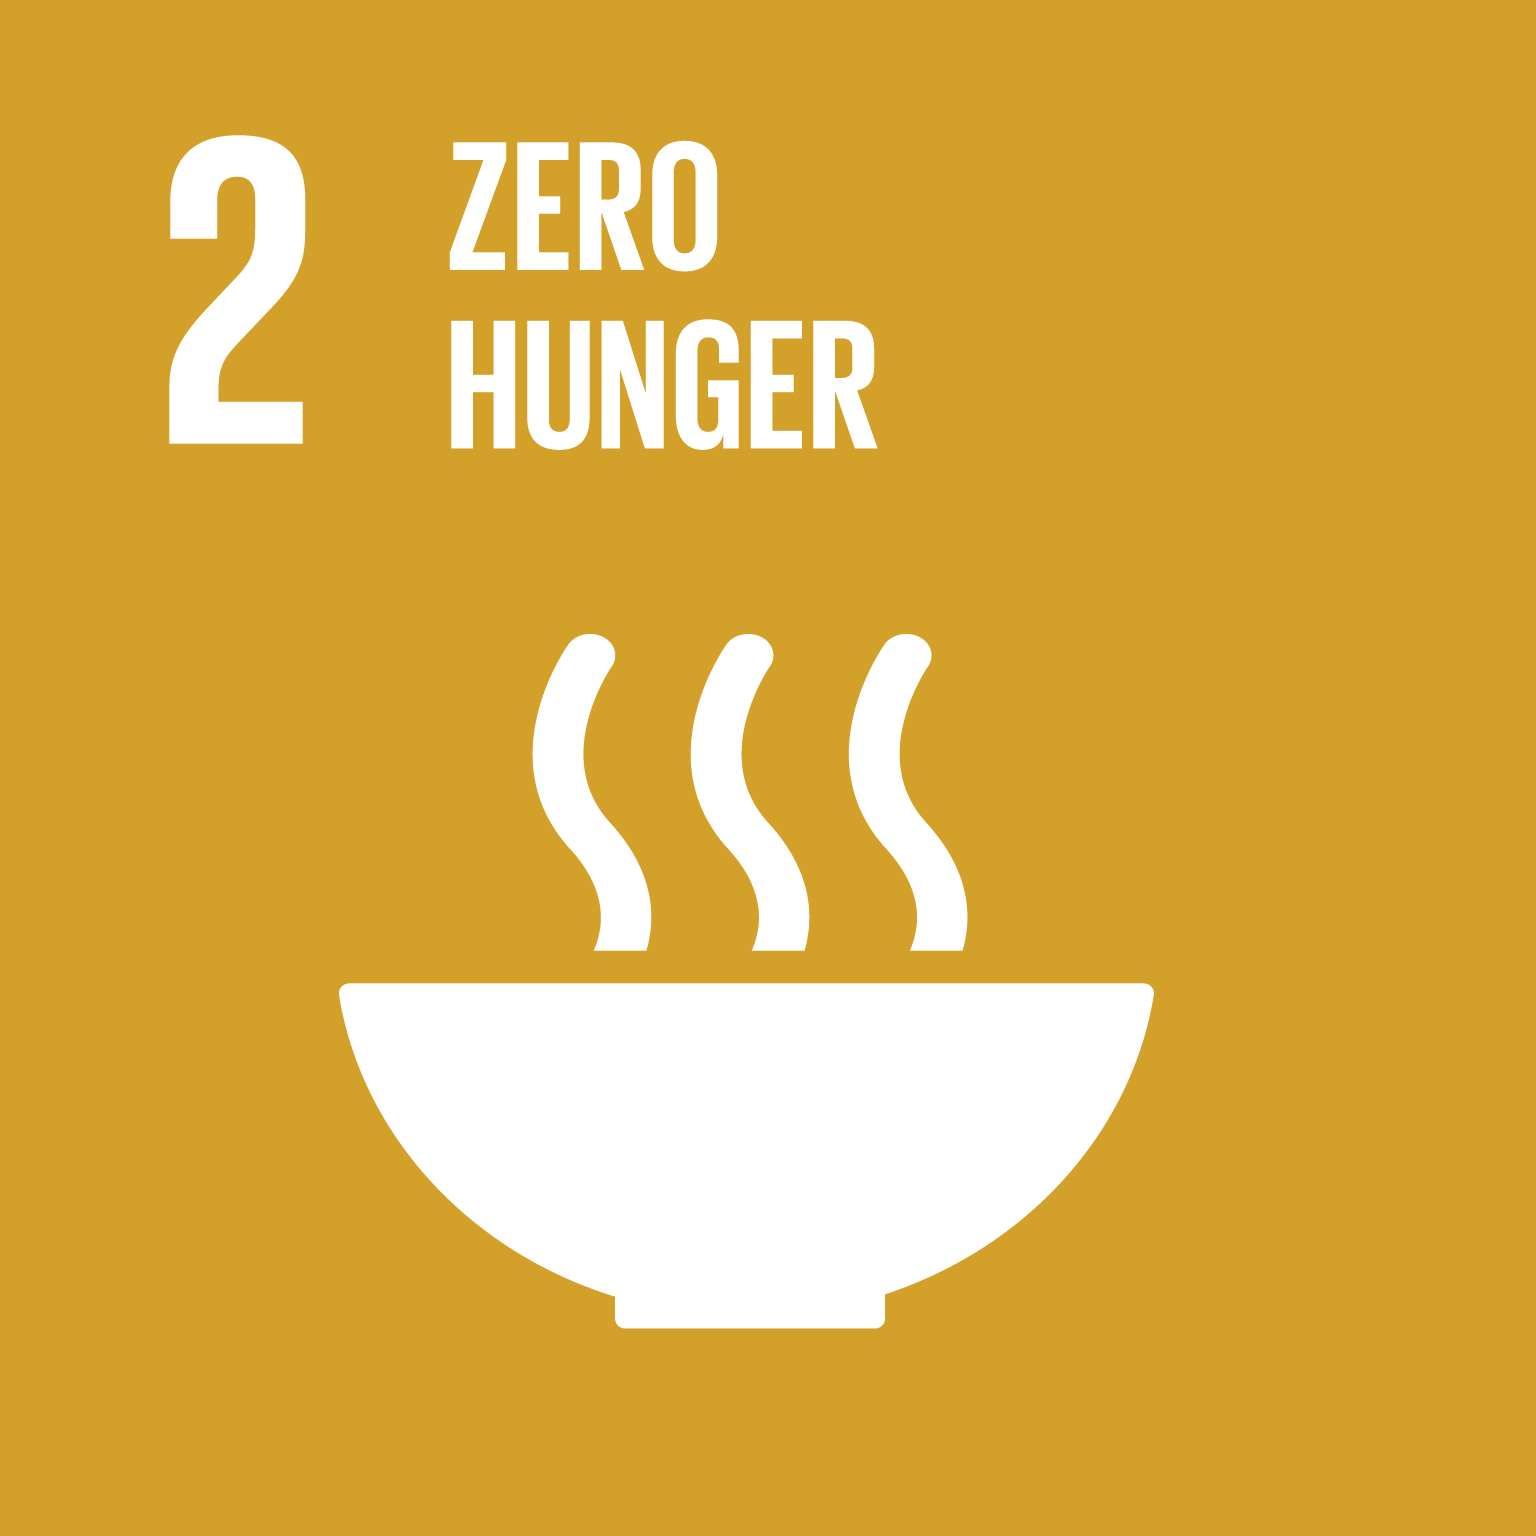 Den Hunger beenden, Ernährungssicherheit und eine bessere Ernährung erreichen und eine nachhaltige Landwirtschaft fördern.